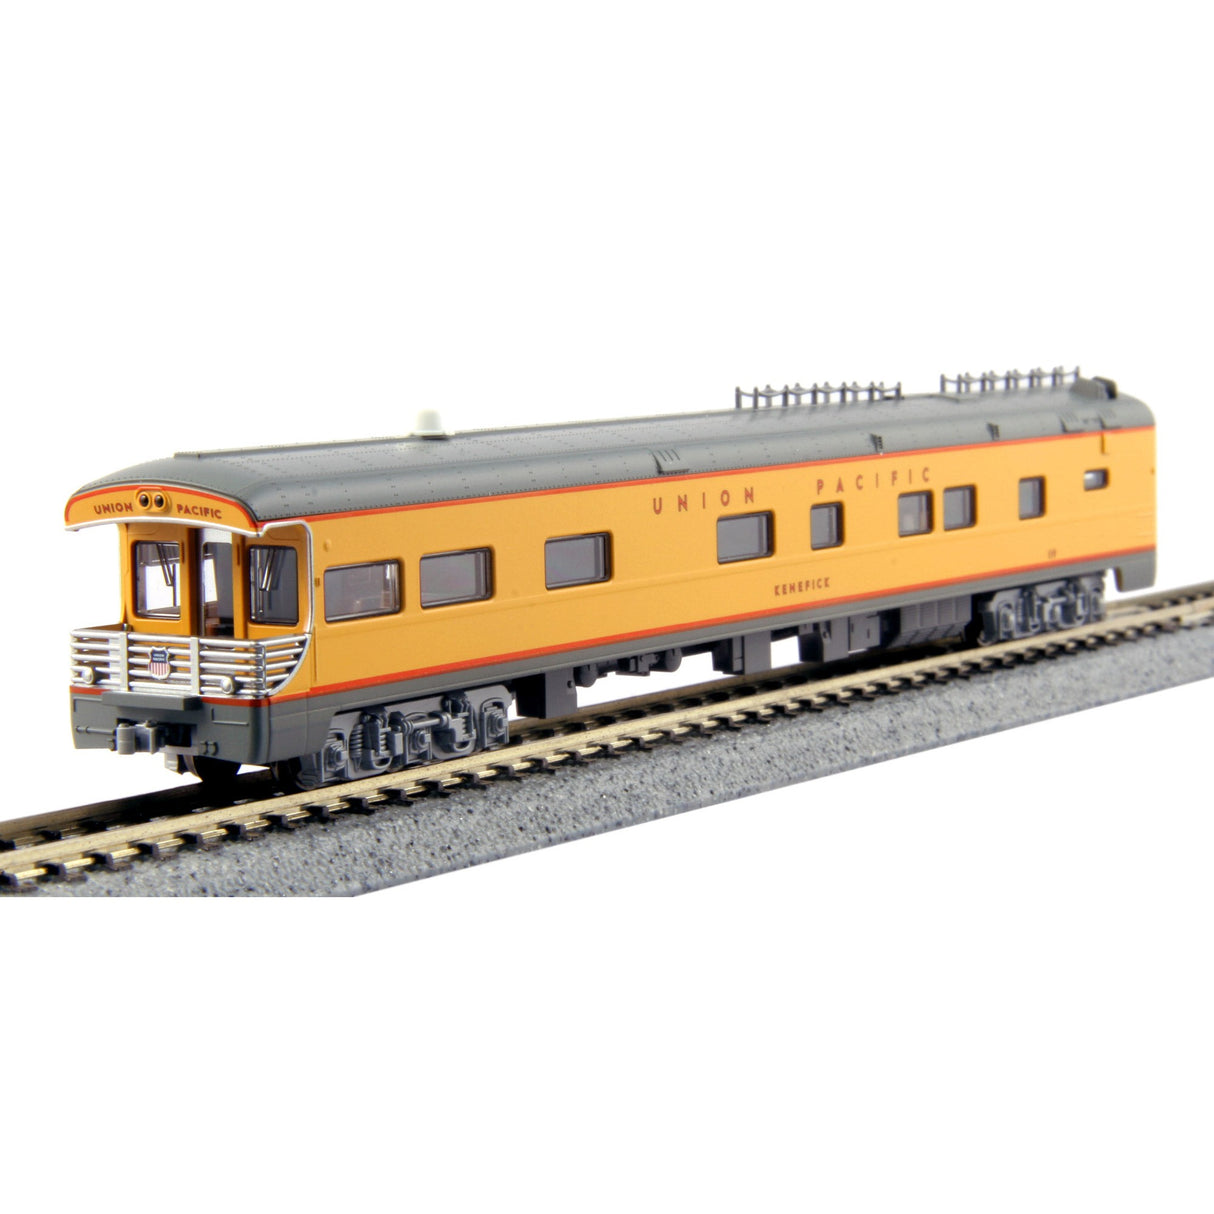 Kato N Scale Union Pacific UP Excursion Train 7-Car Set 106-086